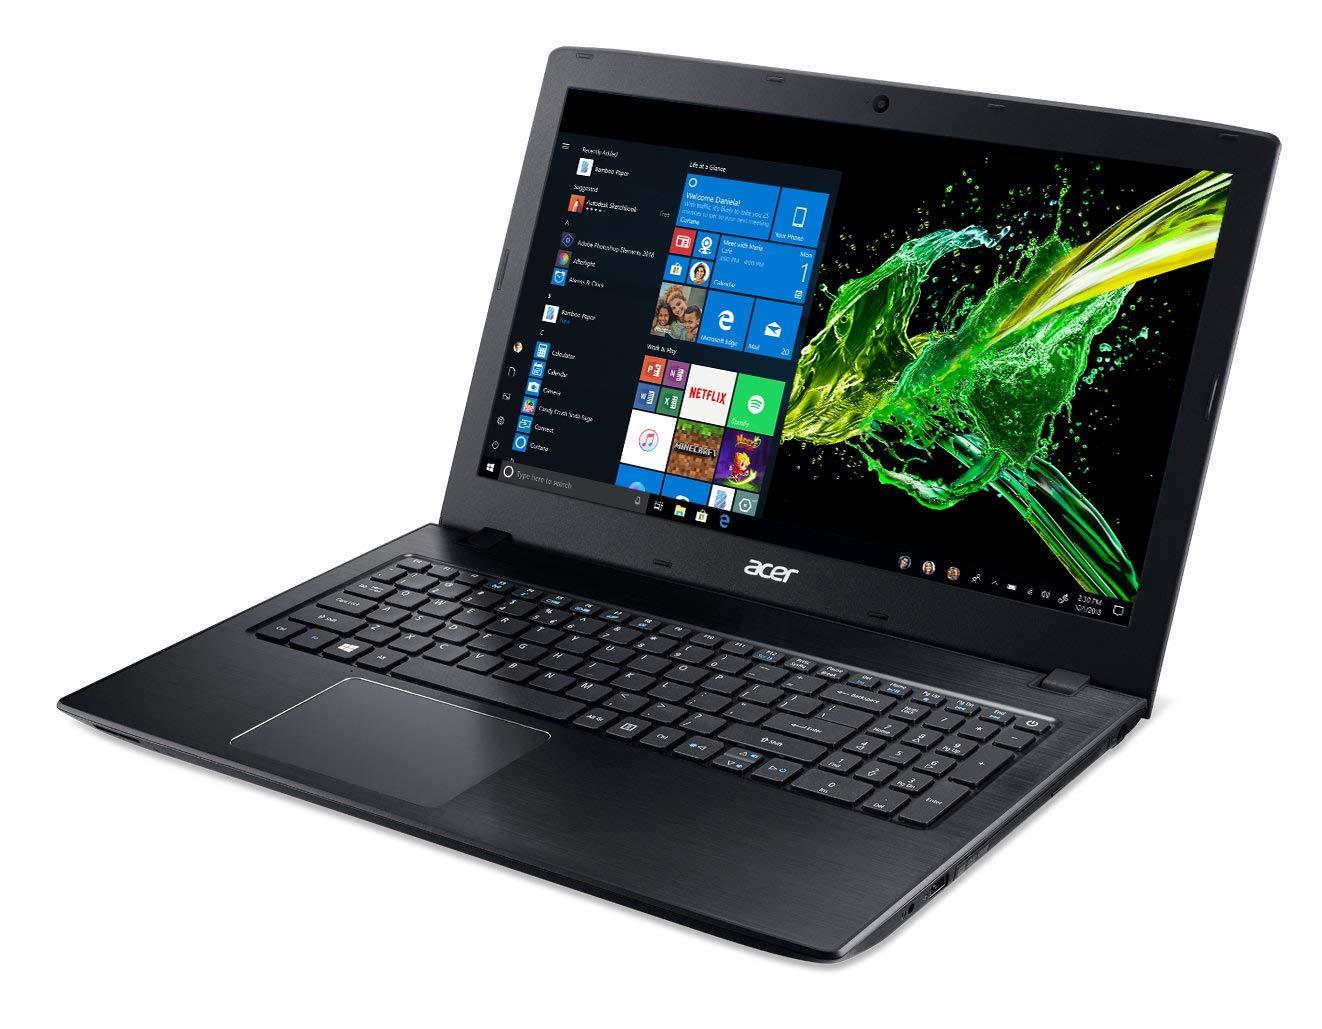 Acer Aspire E 15 Laptop - Best Laptop for Skyrim